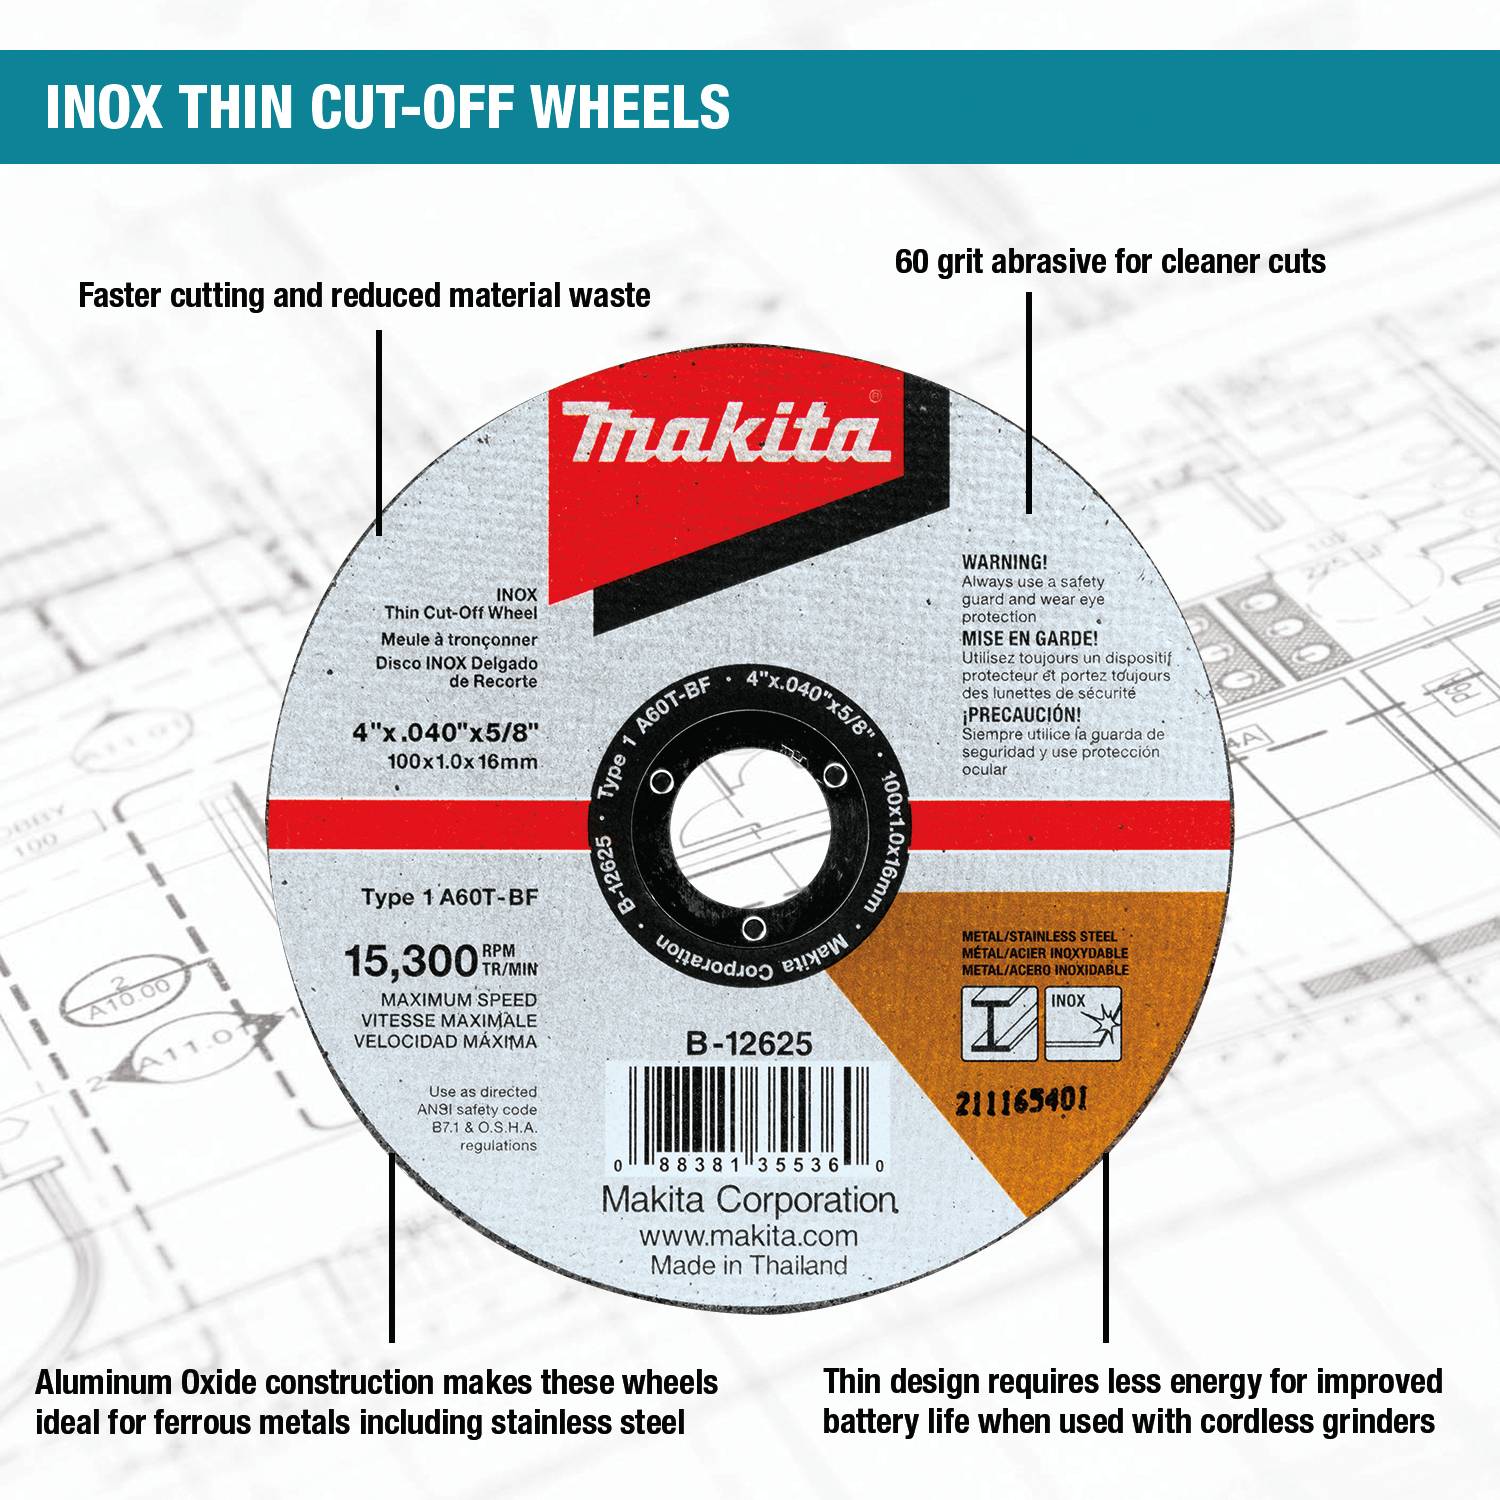 B-12669-10 Makita 7' x 1/16' x 7/8' INOX Thin Cut-Off Wheel, 60 Grit, 10 Pack 3